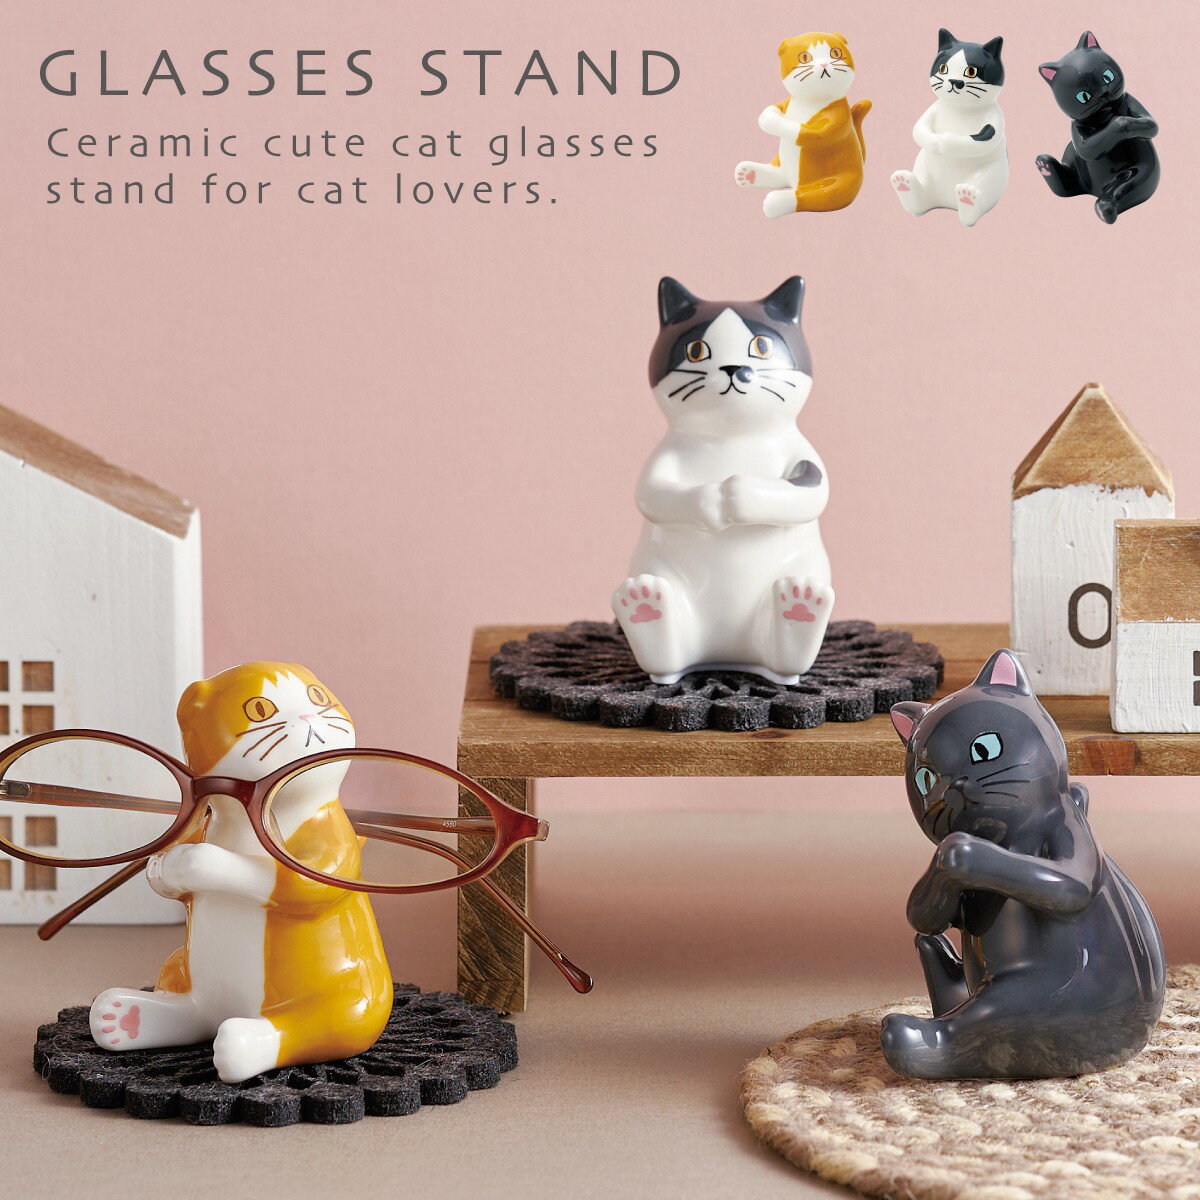 メガネスタンド 猫 動物 可愛い 眼鏡スタンド めがねスタンド アニマル かわいい 猫雑貨 ネコ ねこ グッズ メガネスタンド